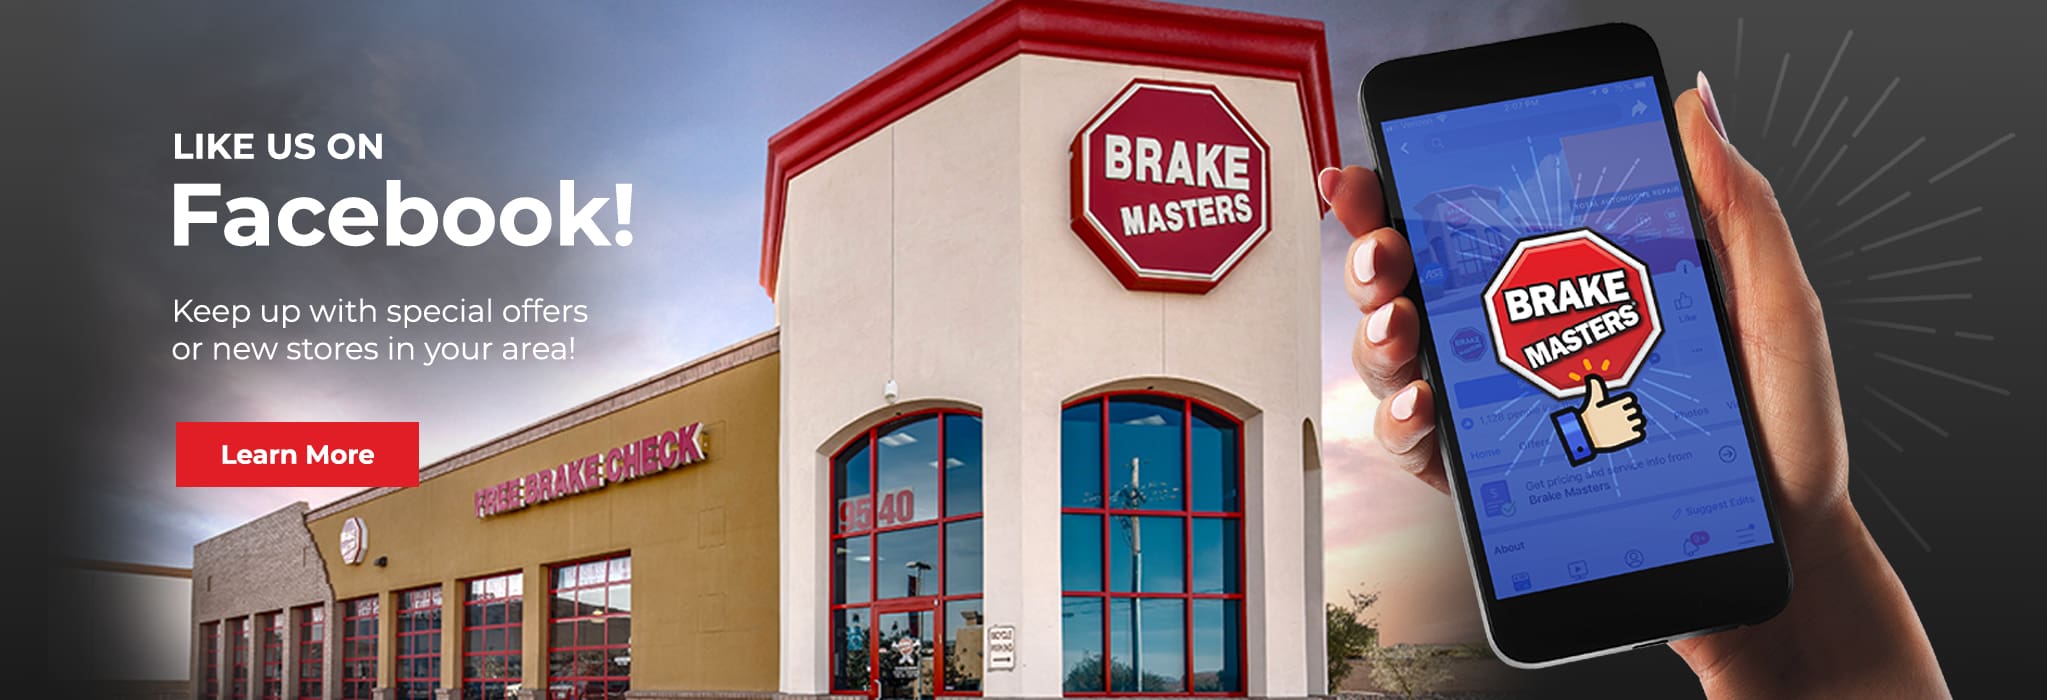 Brake Masters Auto Repair Shop - Facebook Page